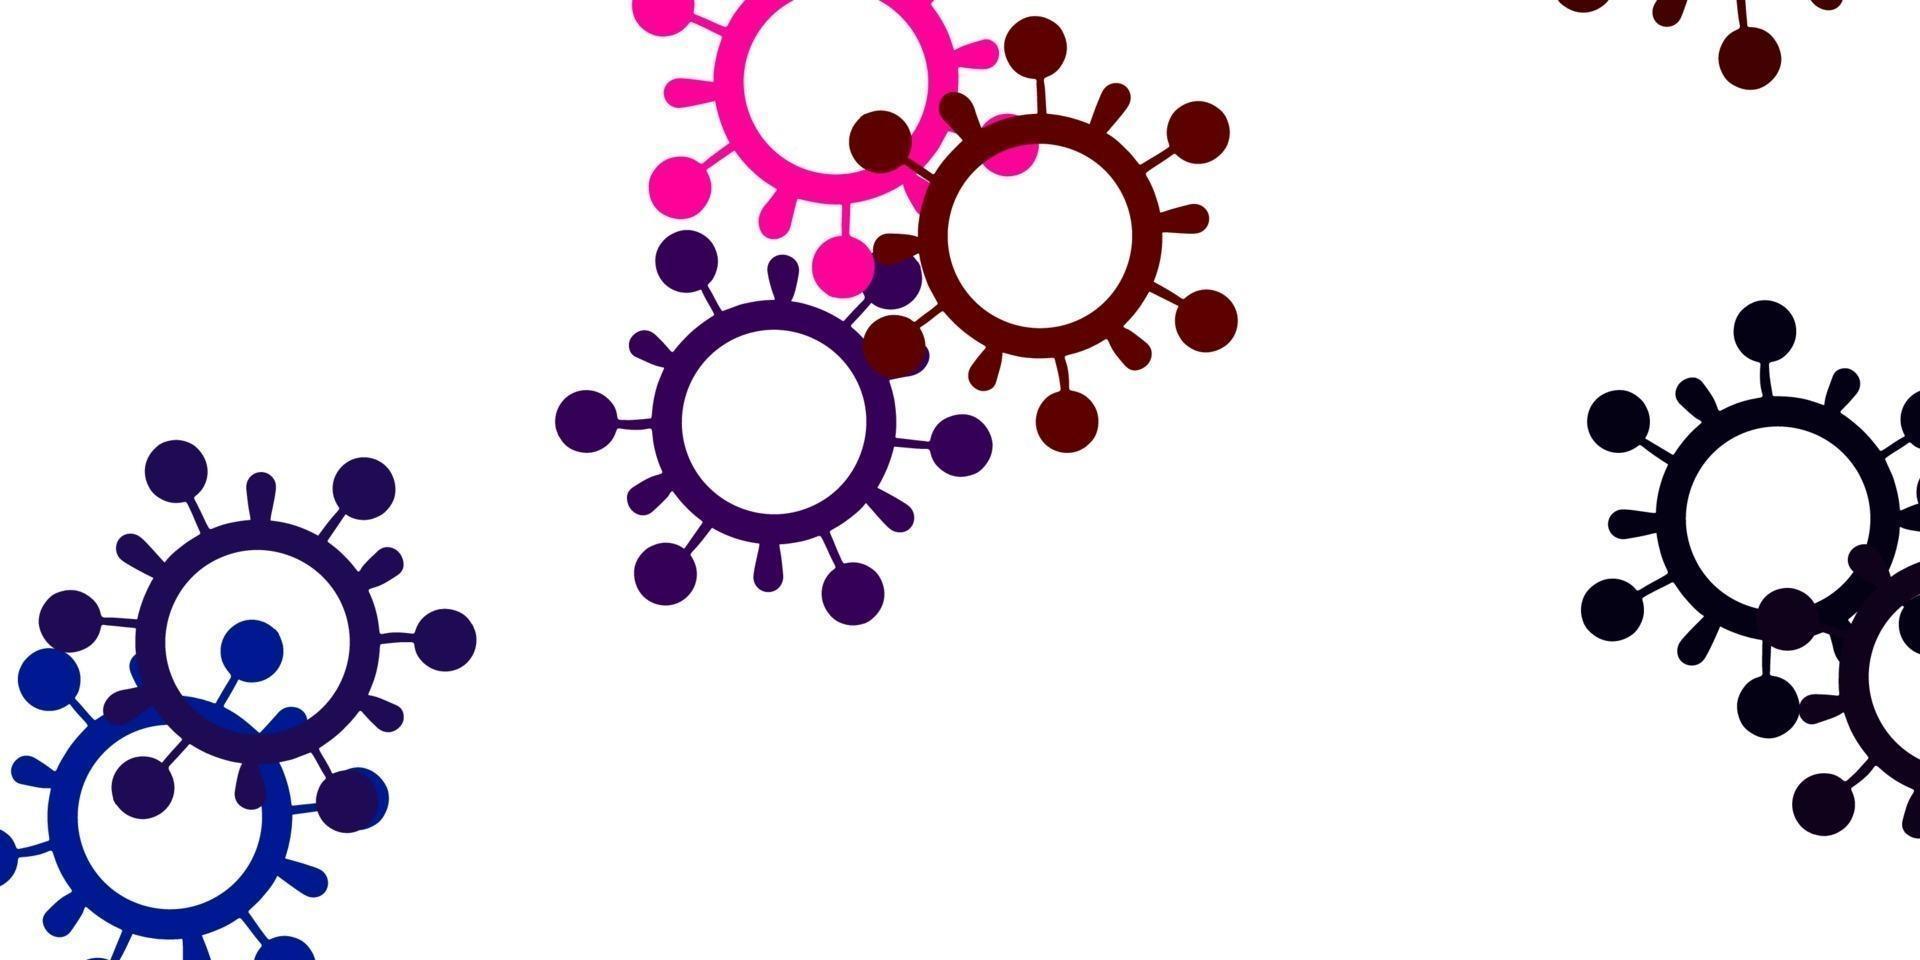 lichtblauw, rood vectorpatroon met coronaviruselementen. vector